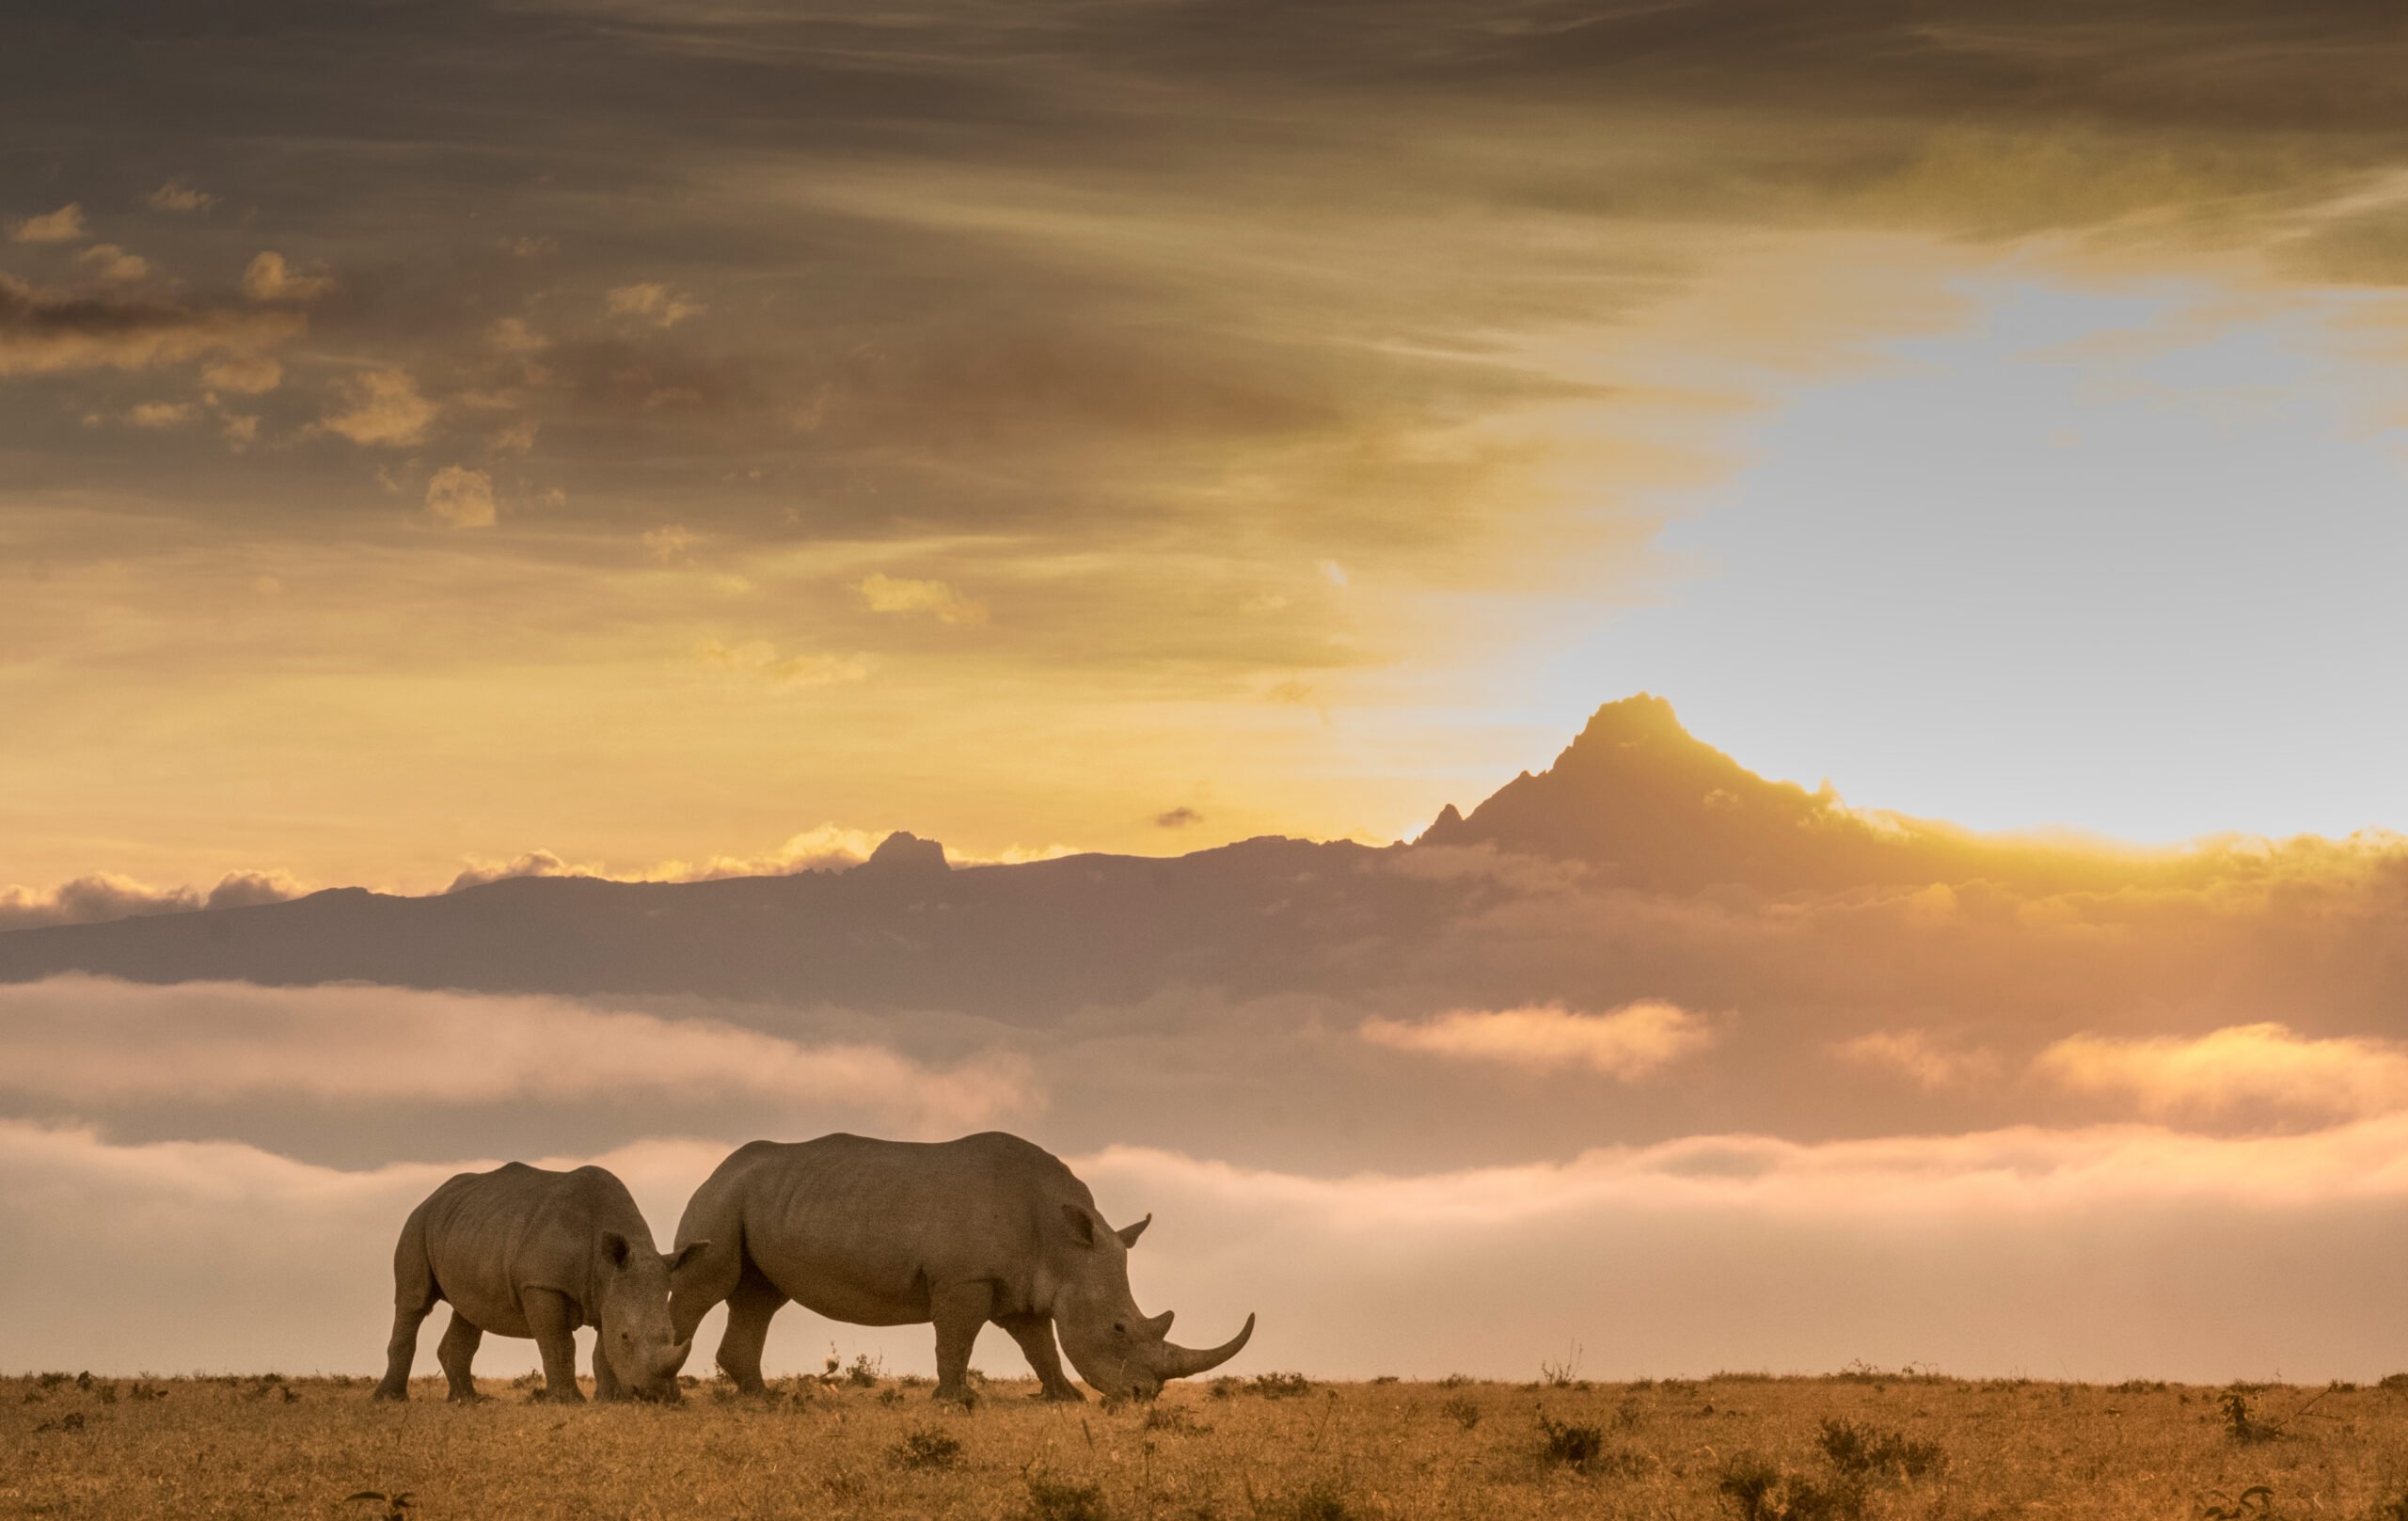 Rhino at sunset, wildlife viewing at Solio Lodge, Kenya